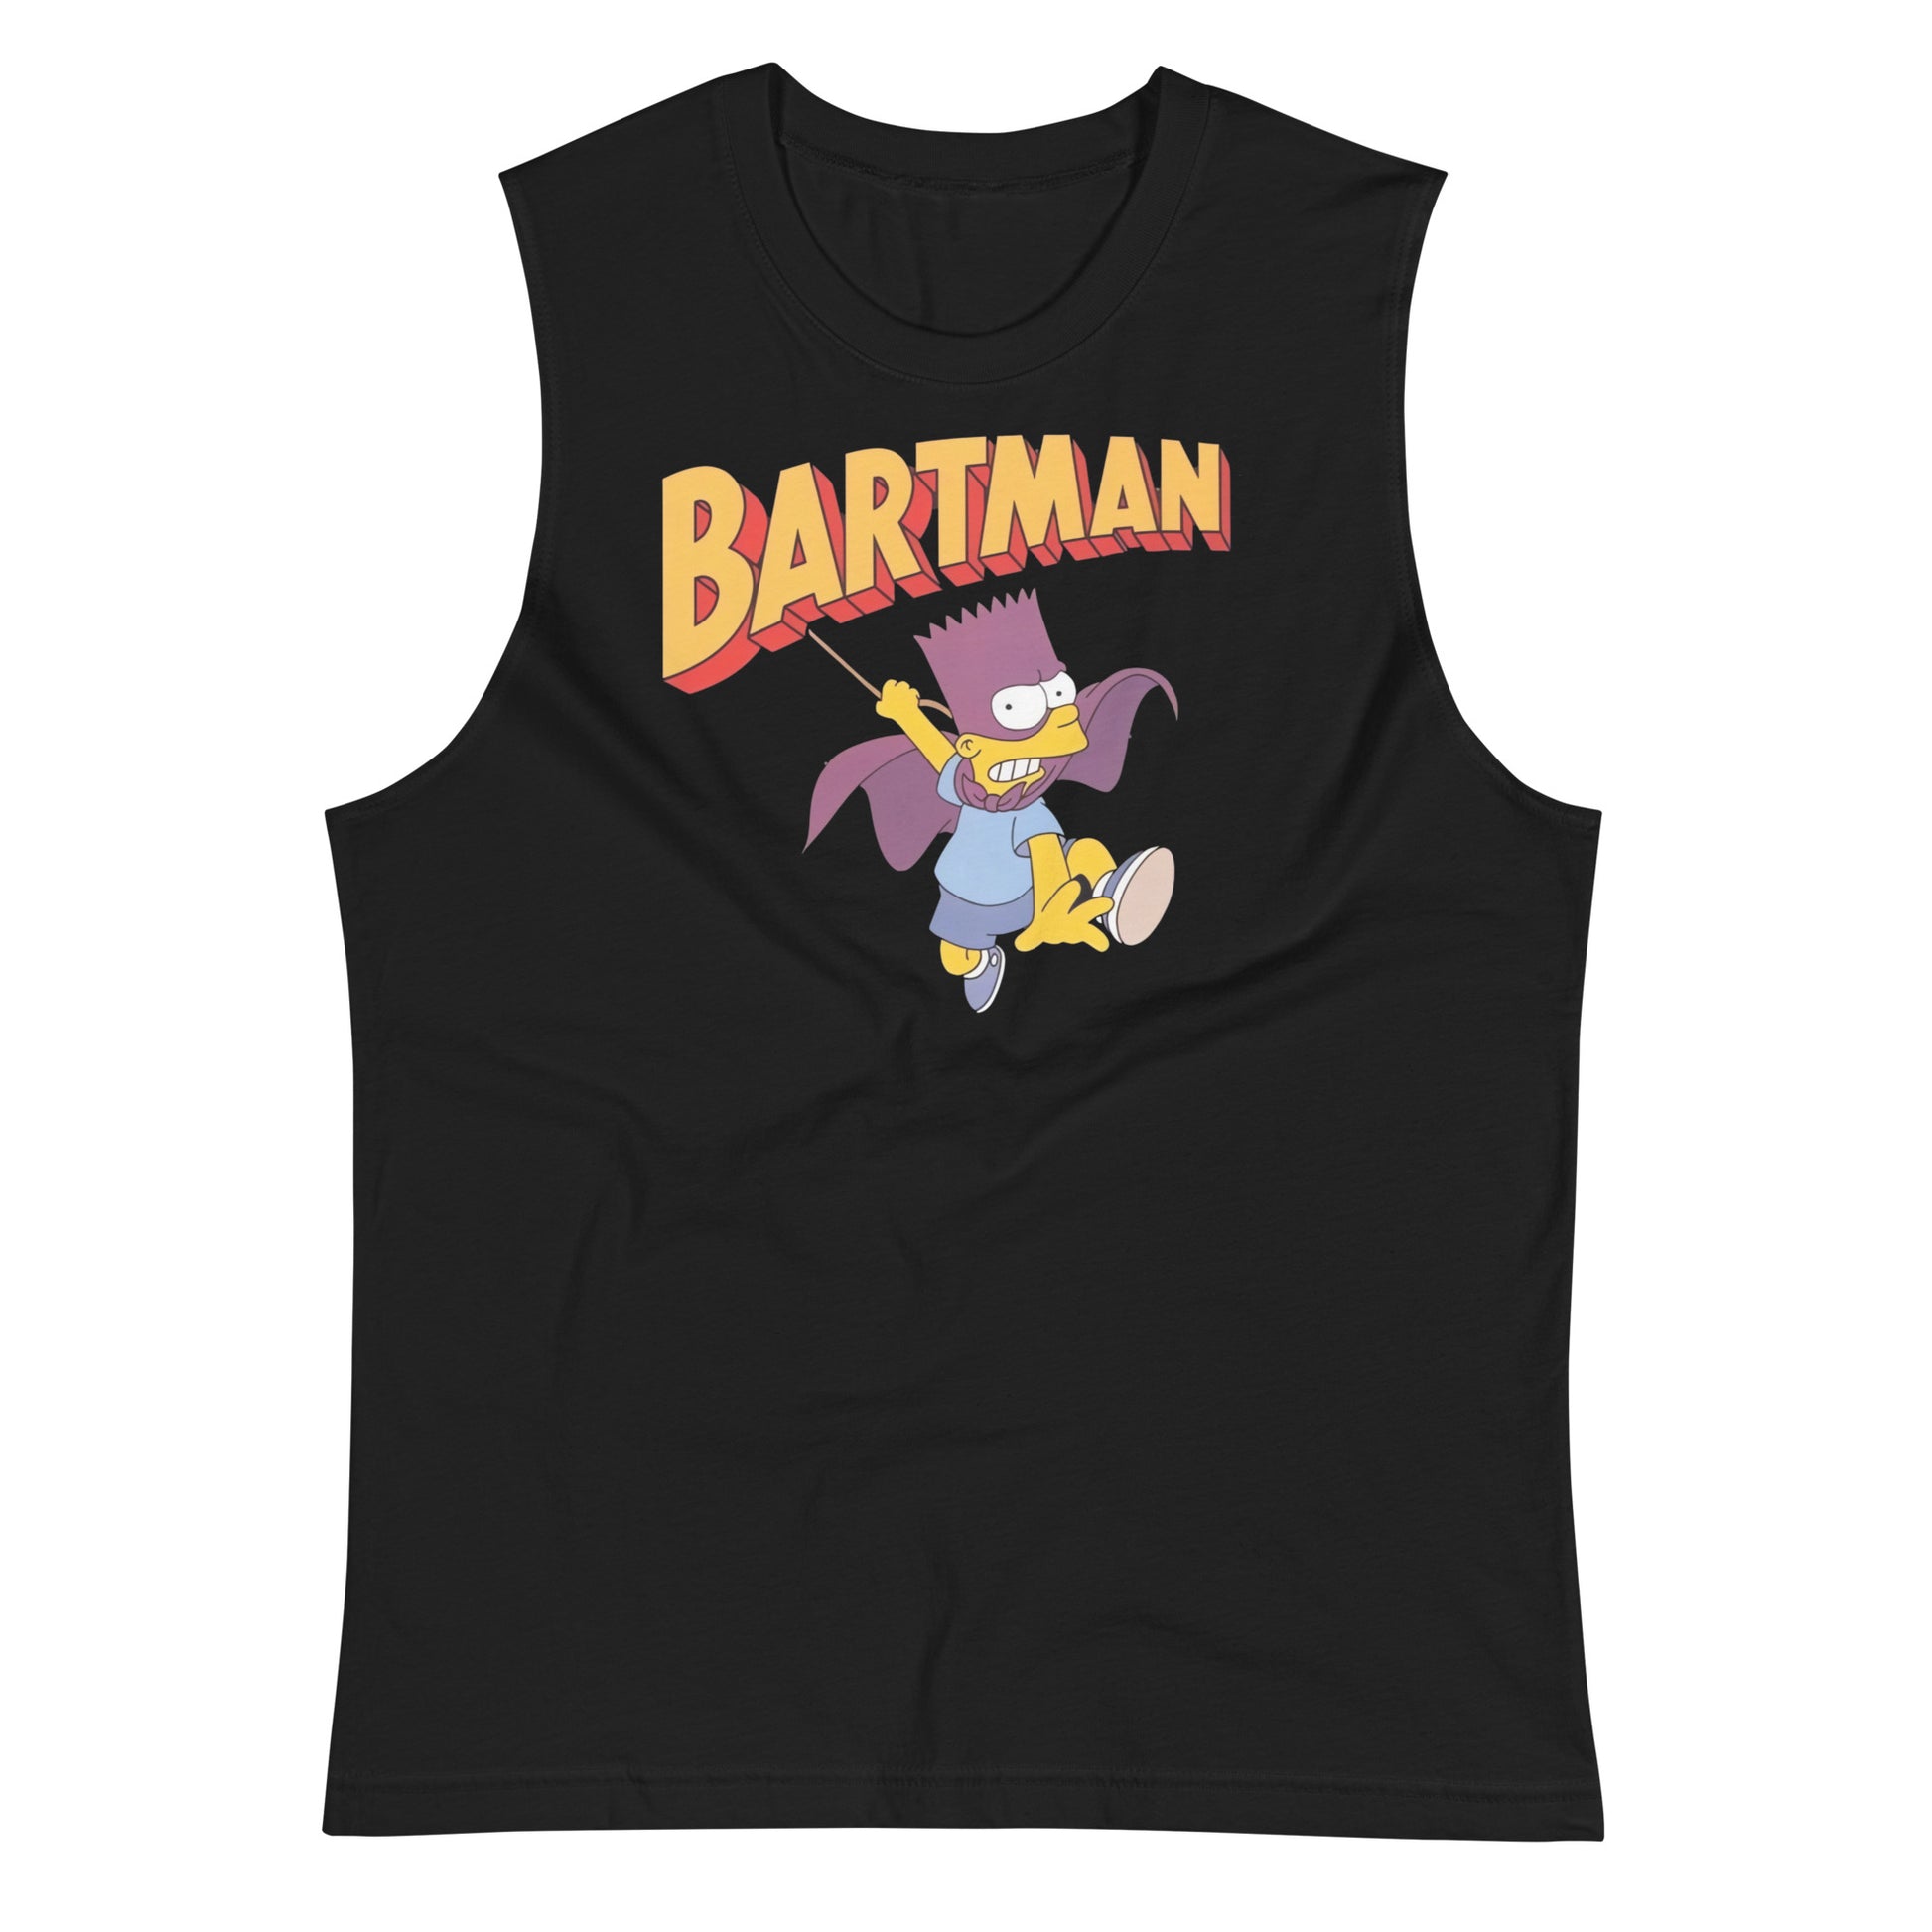 Camiseta sin Mangas de Bartman, Nuestras Camisetas son unisex disponibles en la mejor tienda online, compra ahora en Superstar!